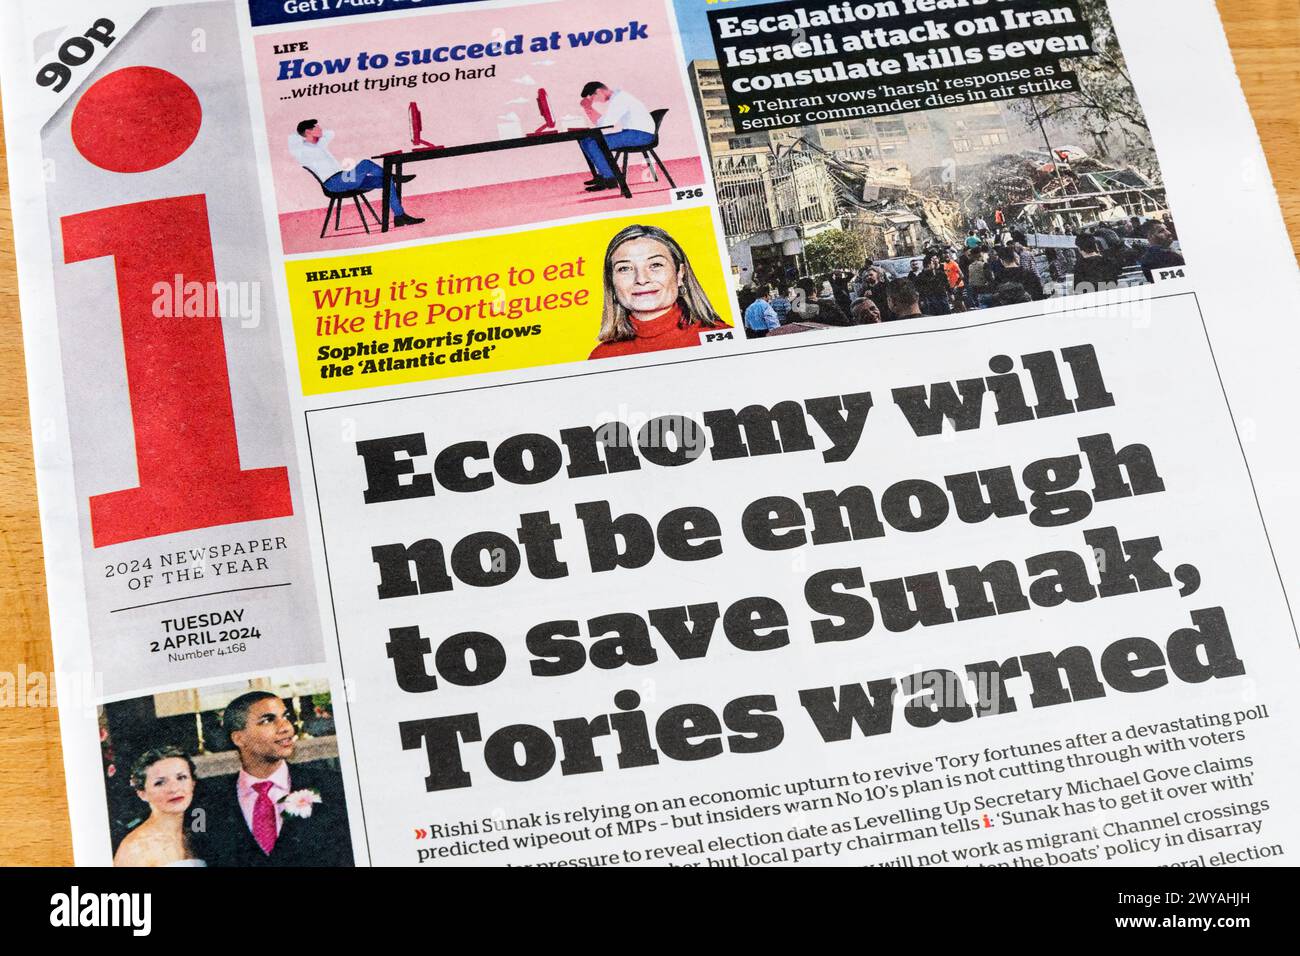 2 aprile 2024. Headlin nel giornale i legge: L'economia non sarà sufficiente per salvare Sunak, Tories avvertì. Foto Stock